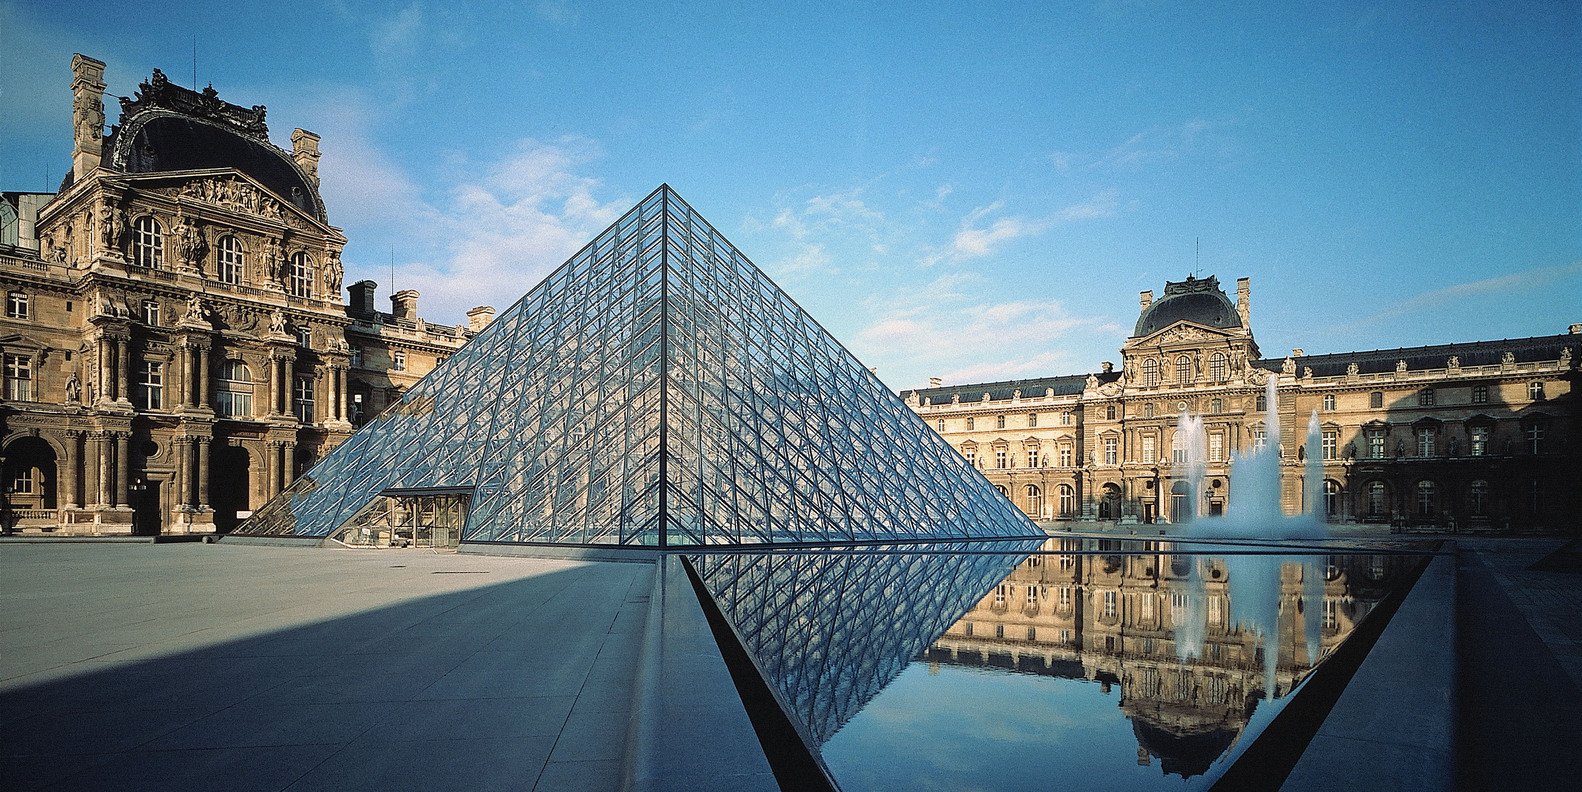 15 kiệt tác nghệ thuật ở bảo tàng Louvre